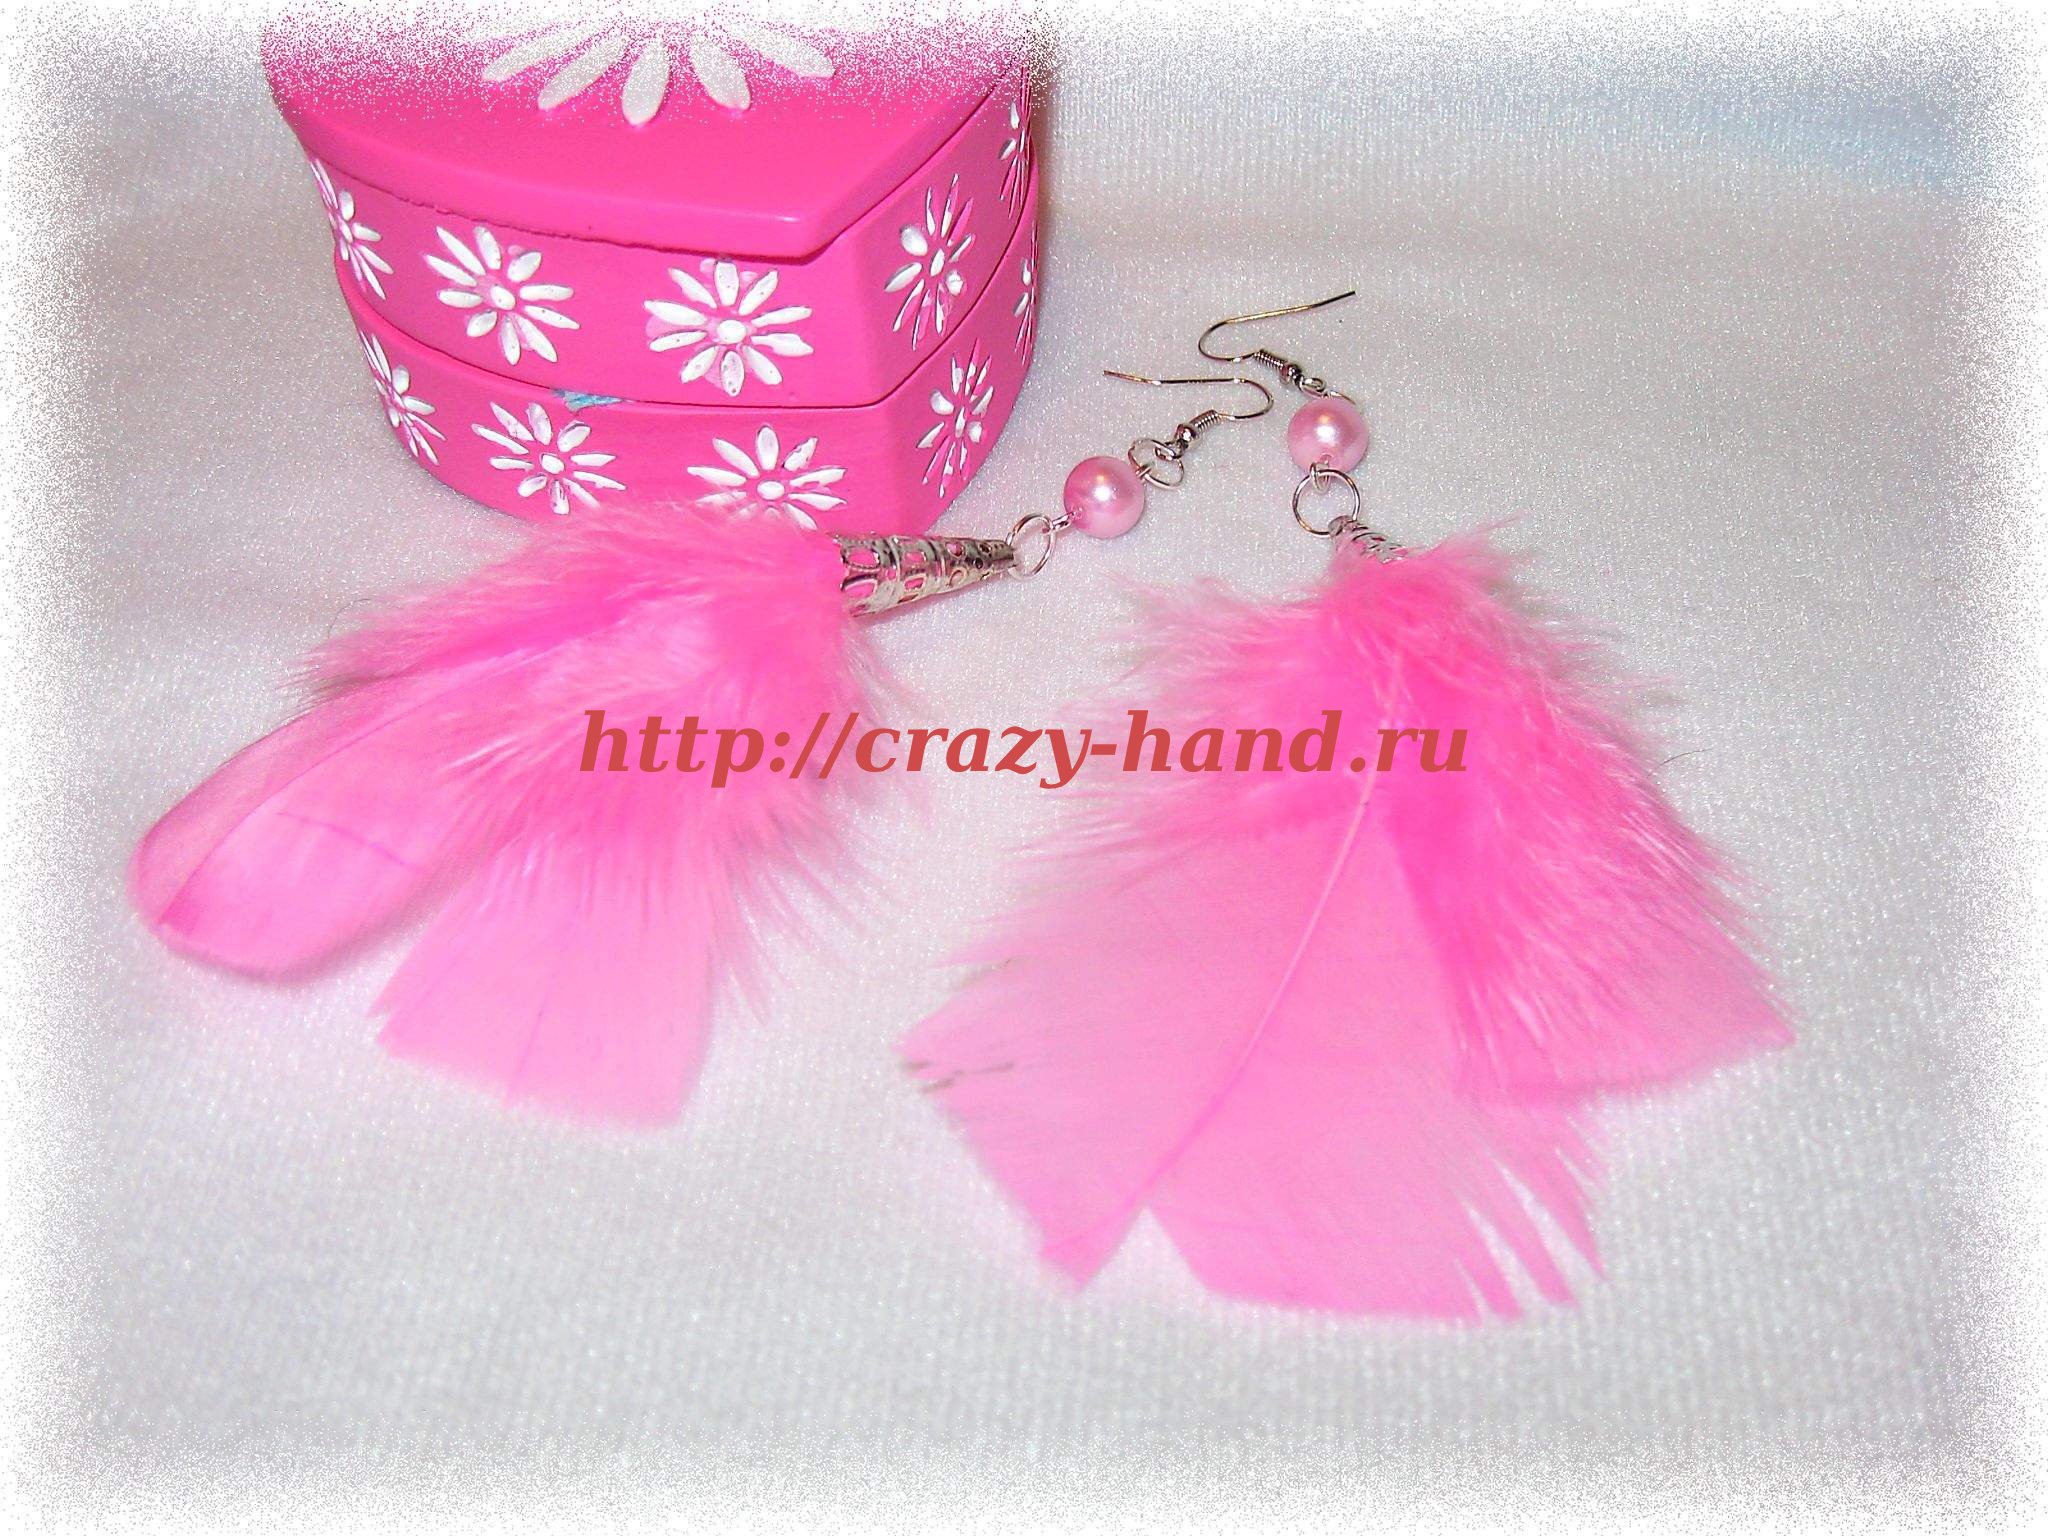 Сережки "Розовые перья" своими руками